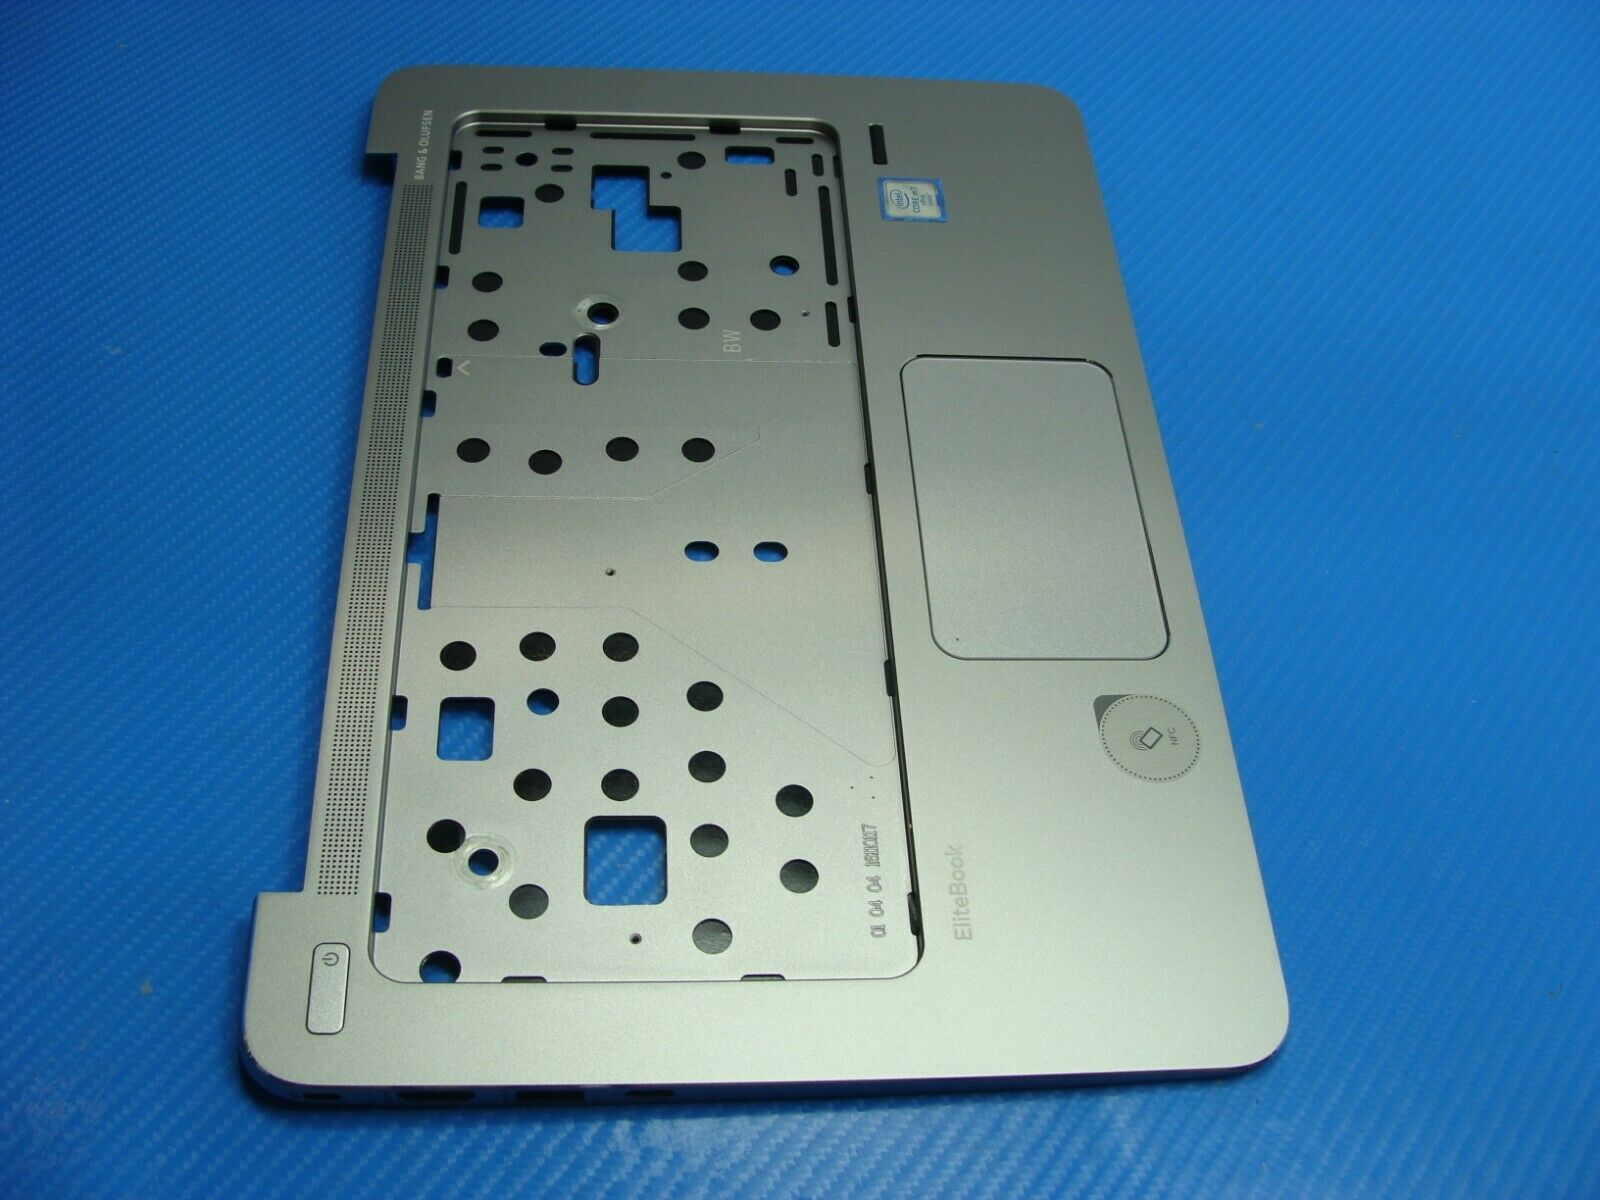 HP Elitebook 1030 G1 13.3